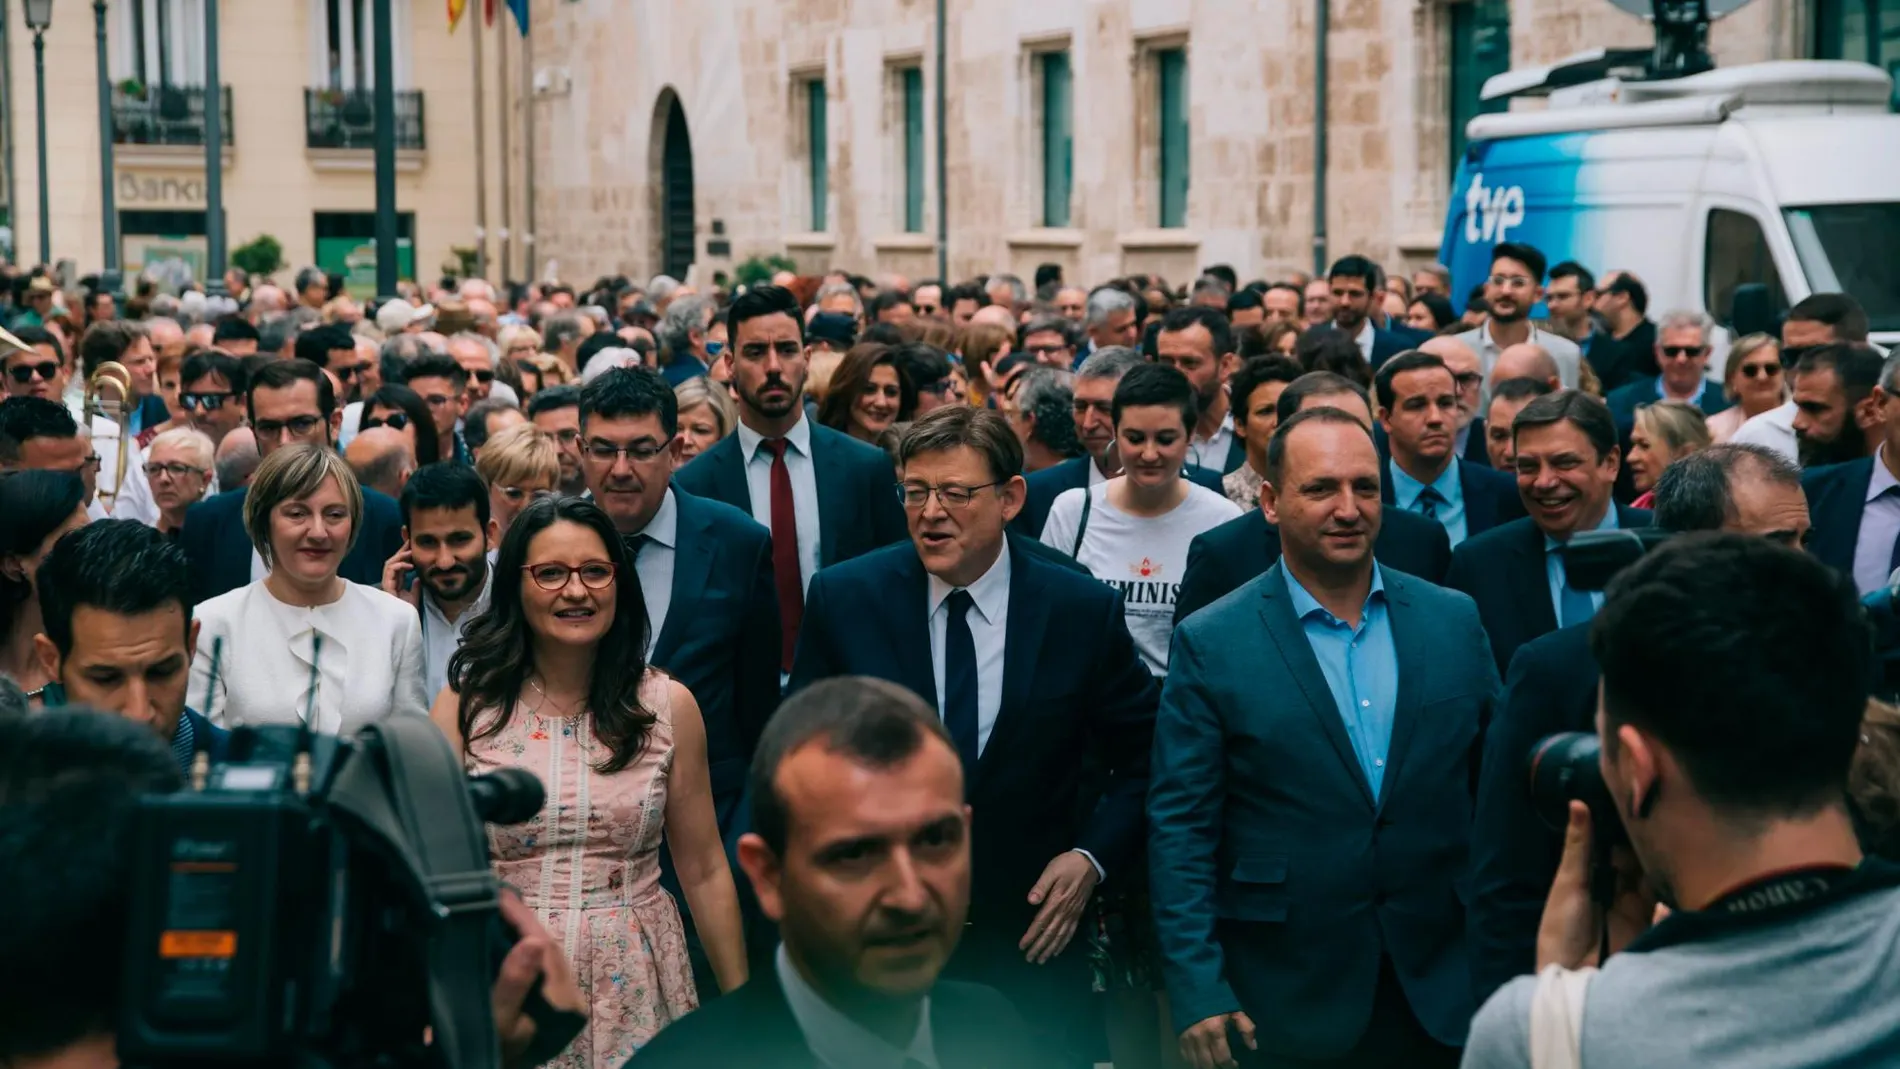 El presidente Puig ha ido a pie desde Les Corts hasta el Palau de la Generalitat. Una banda de música le ha seguido interpretando pasodobles. Foto Kike Taberner